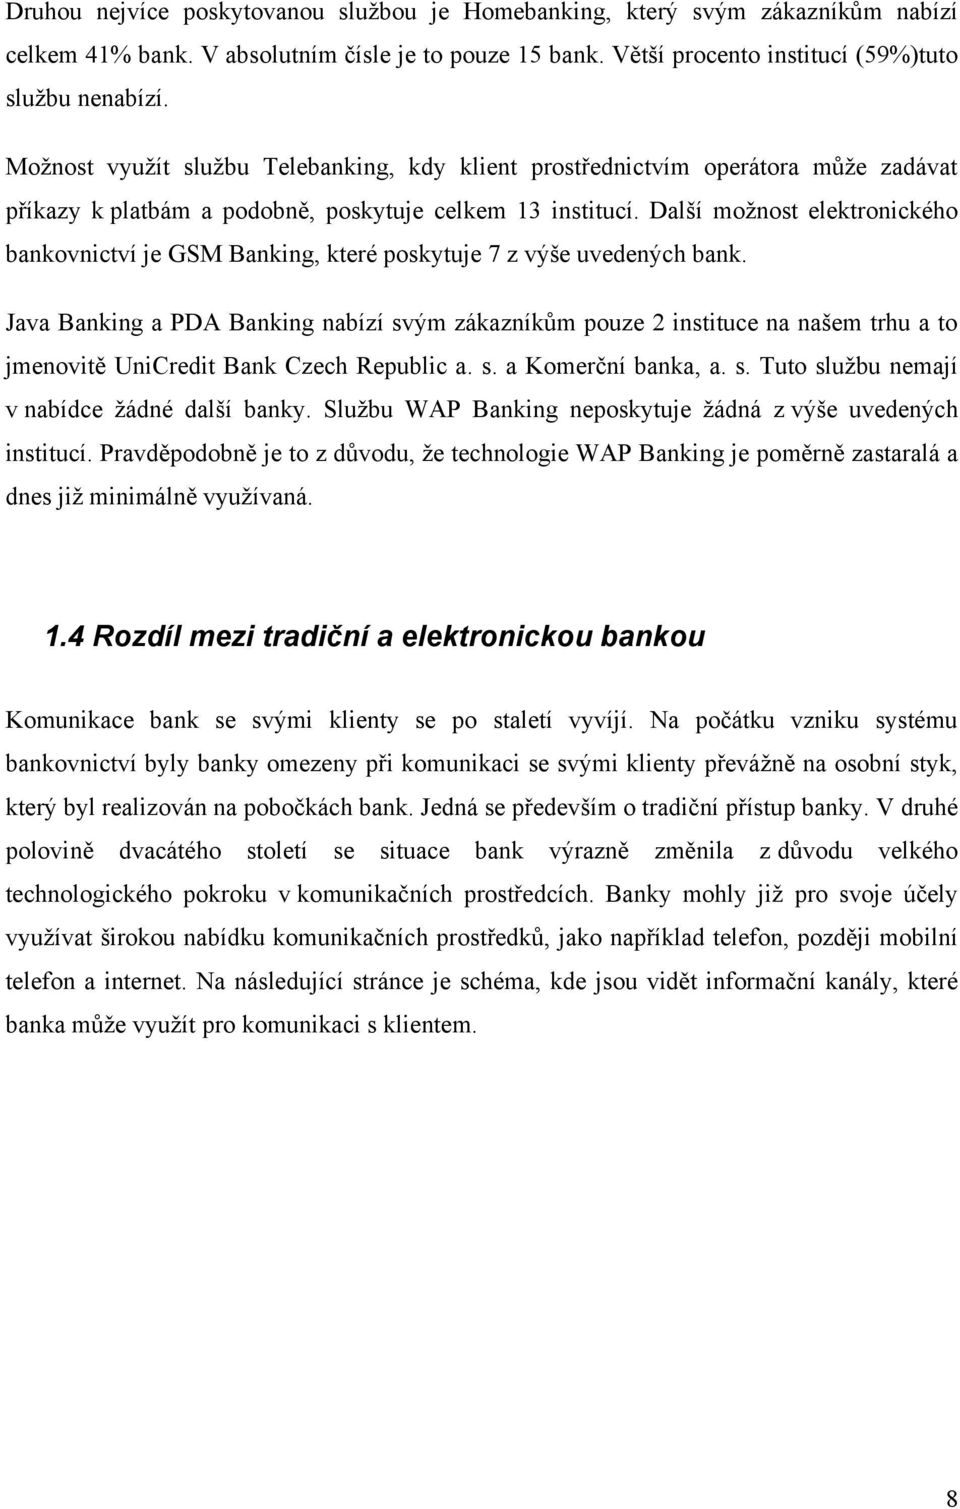 Další moţnost elektronického bankovnictví je GSM Banking, které poskytuje 7 z výše uvedených bank.